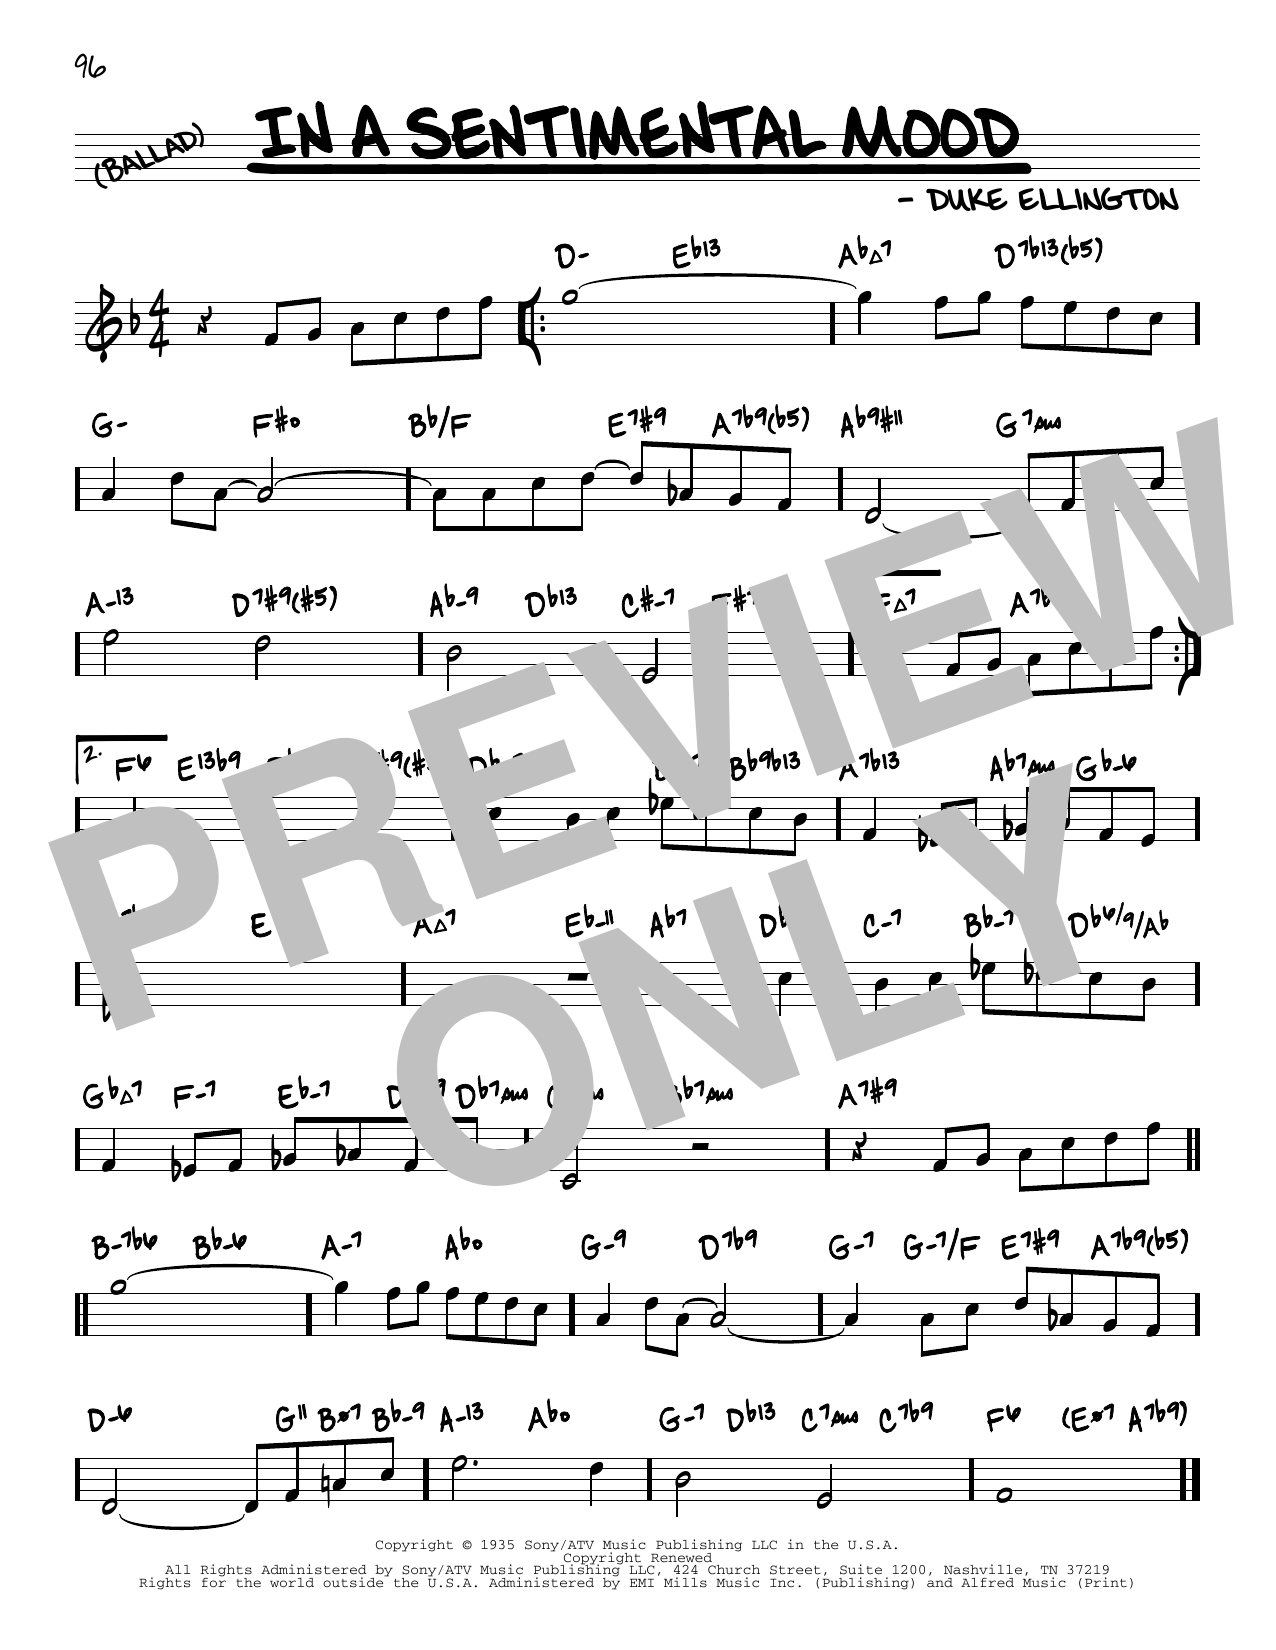 Duke Ellington In A Sentimental Mood (arr. David Hazeltine) Sheet Music Notes & Chords for Real Book – Enhanced Chords - Download or Print PDF